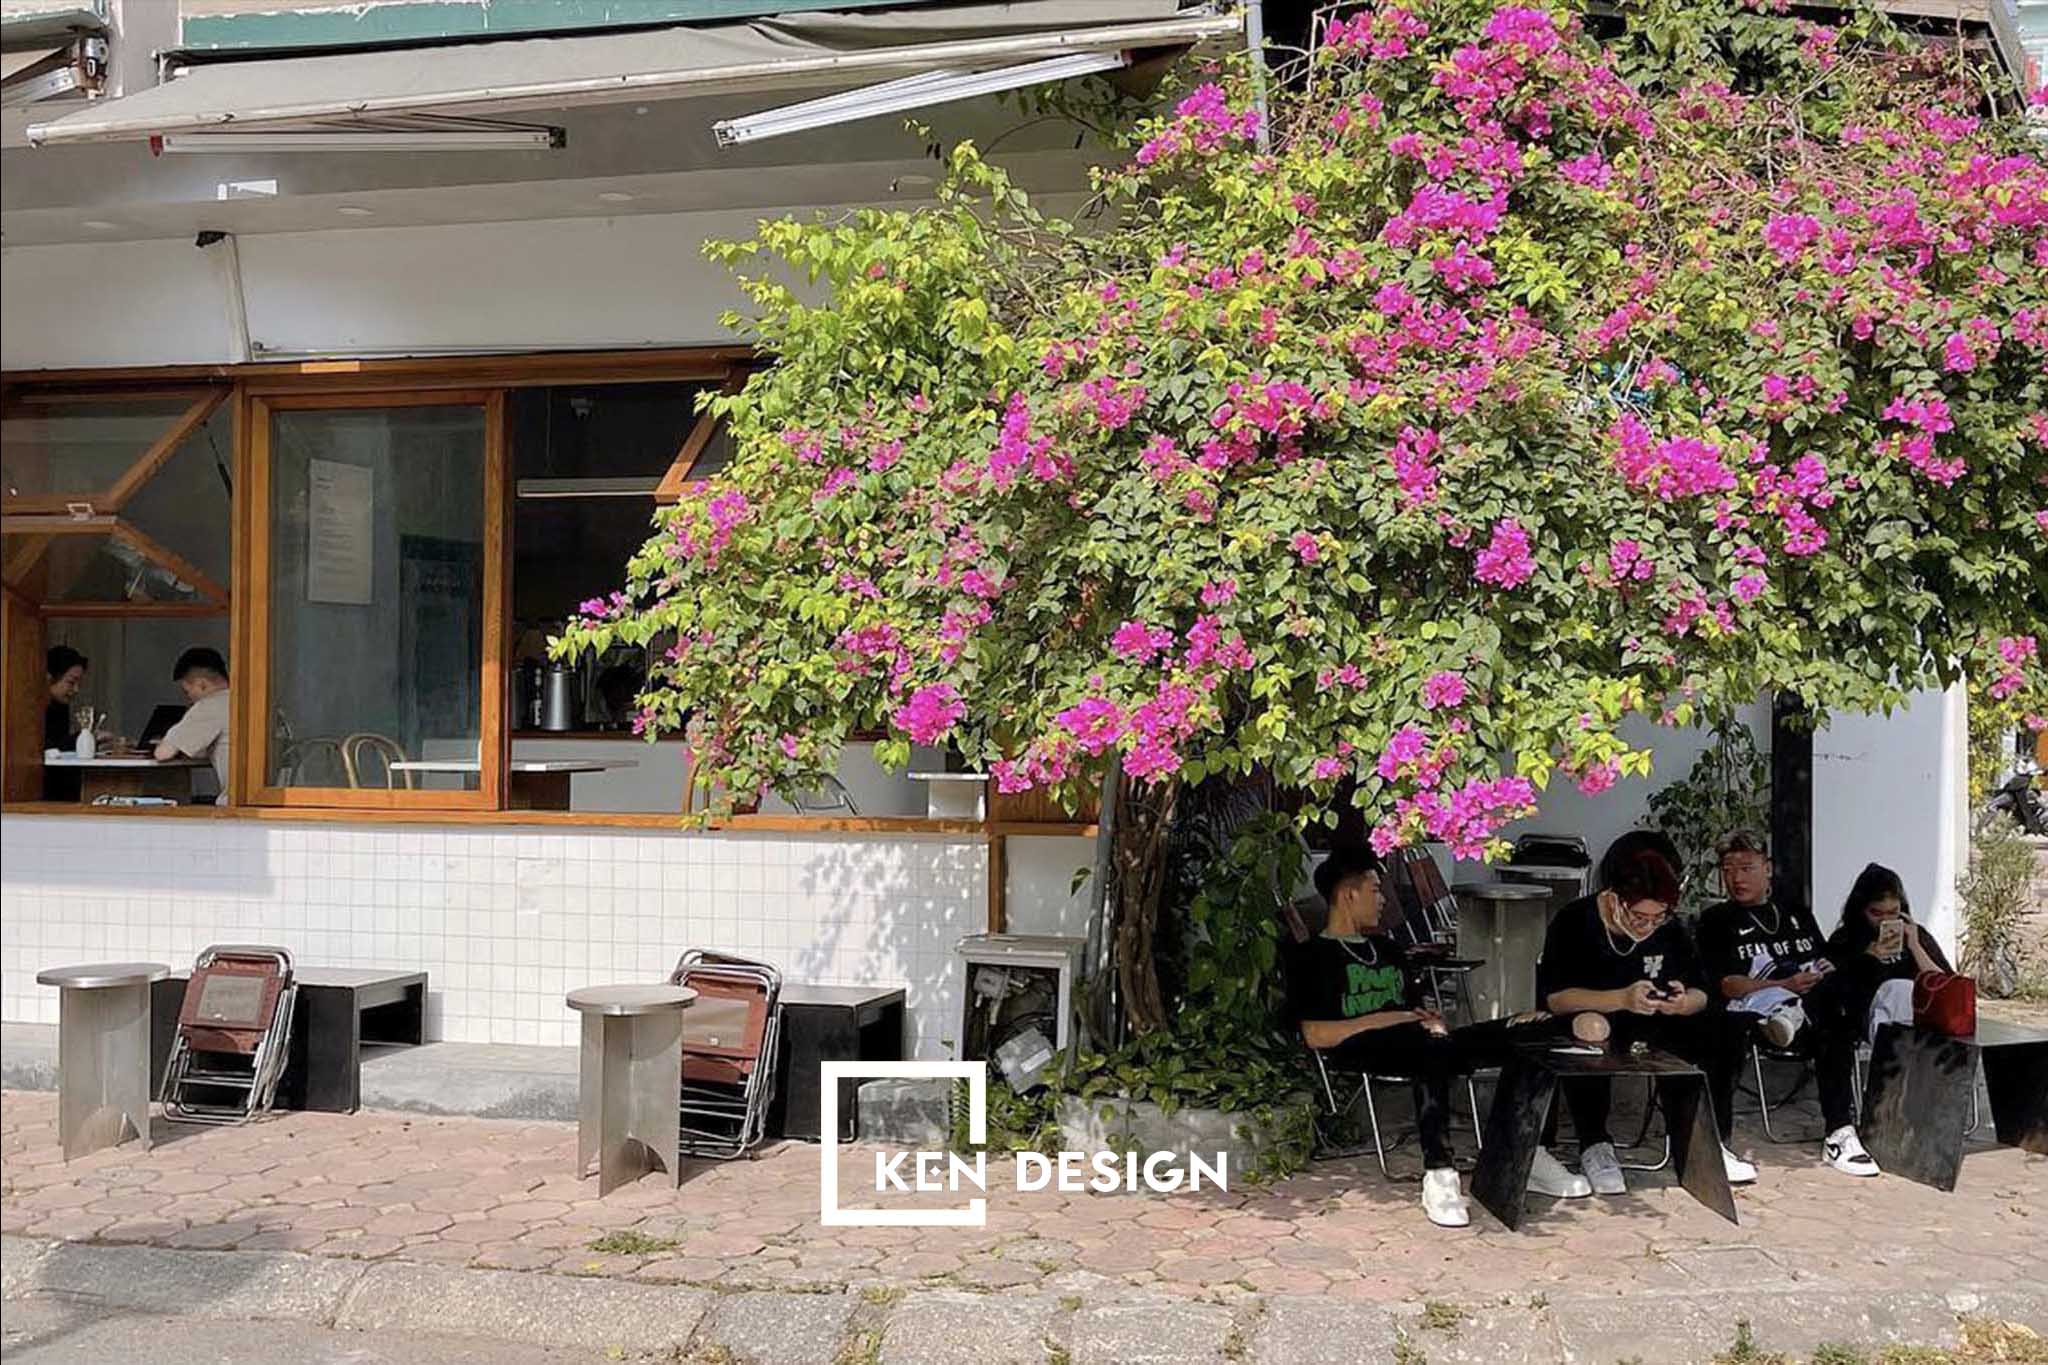 quán cafe đẹp Monocle coffee nổi bật bên giàn hoa giấy